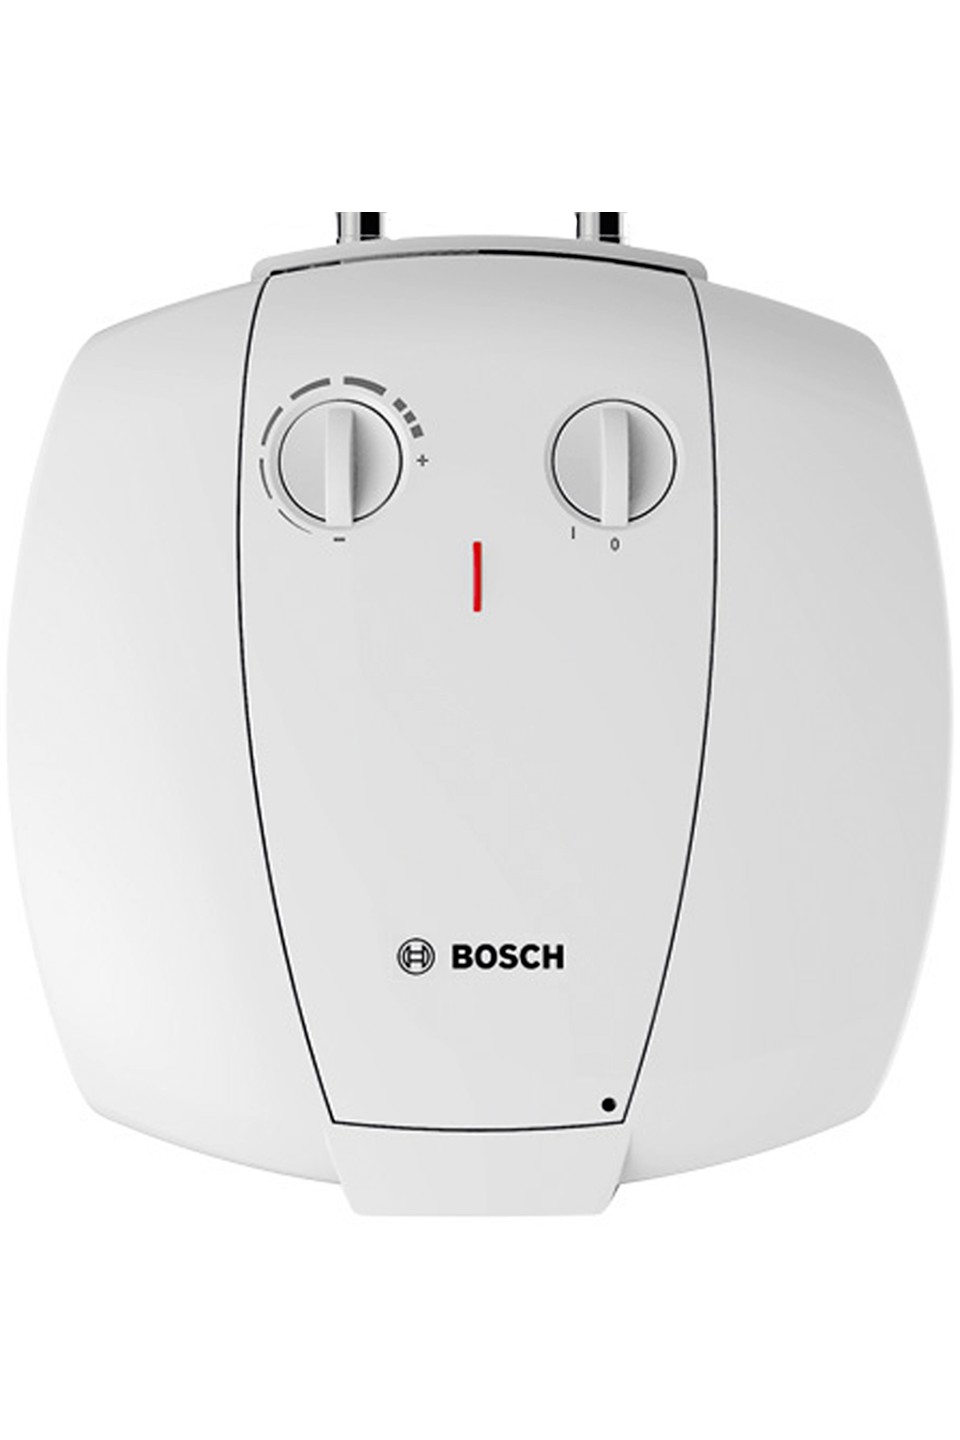 Бойлер Bosch TR 2000 T 15 T (7736504744) в Киеве